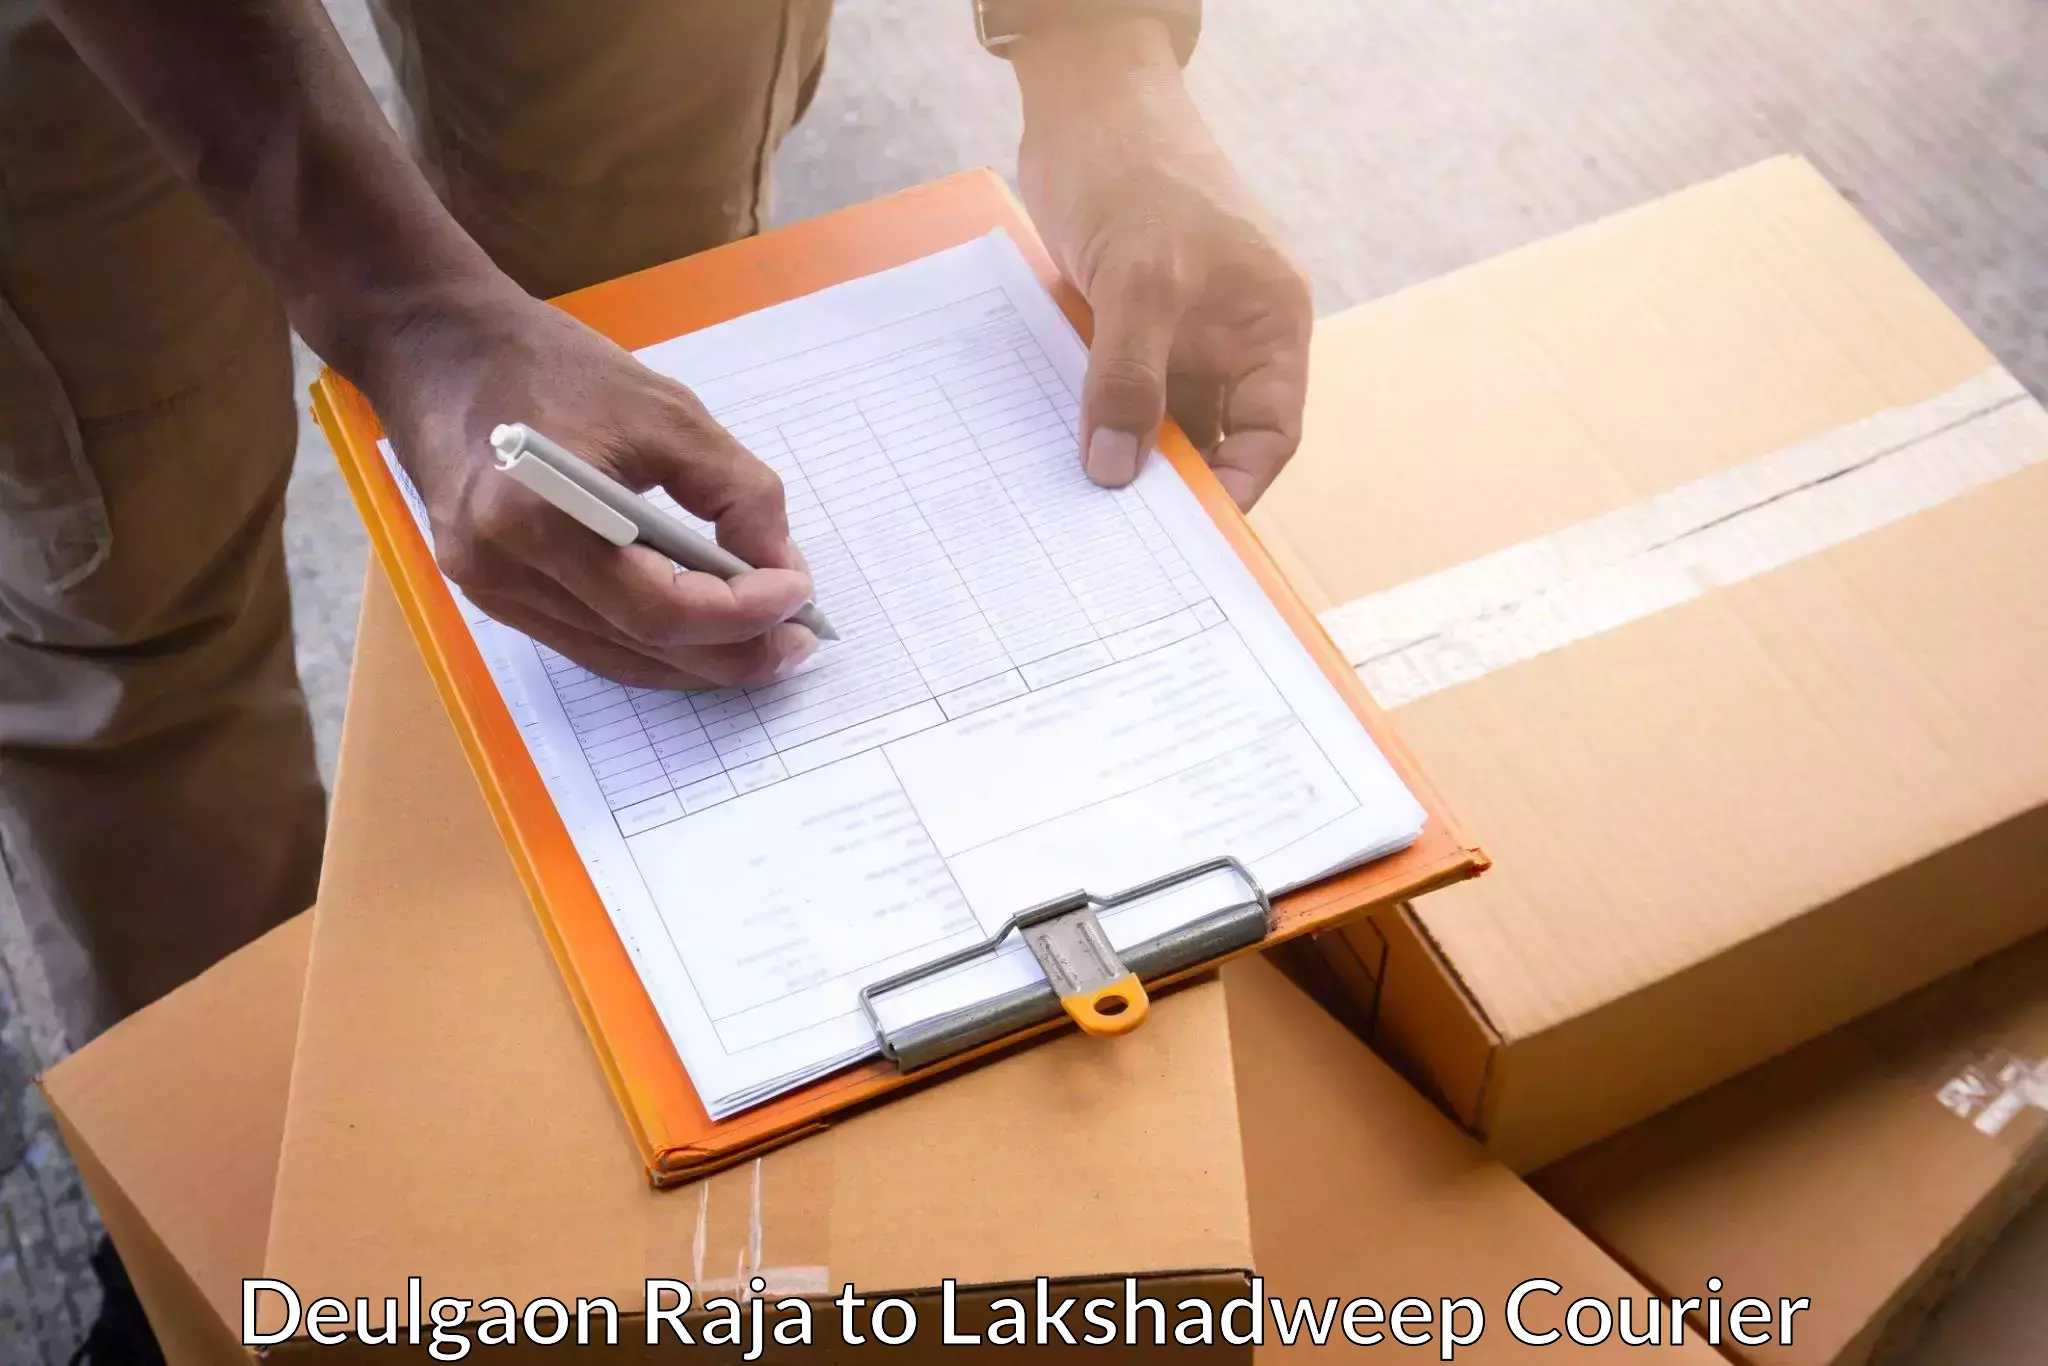 Large package courier Deulgaon Raja to Lakshadweep